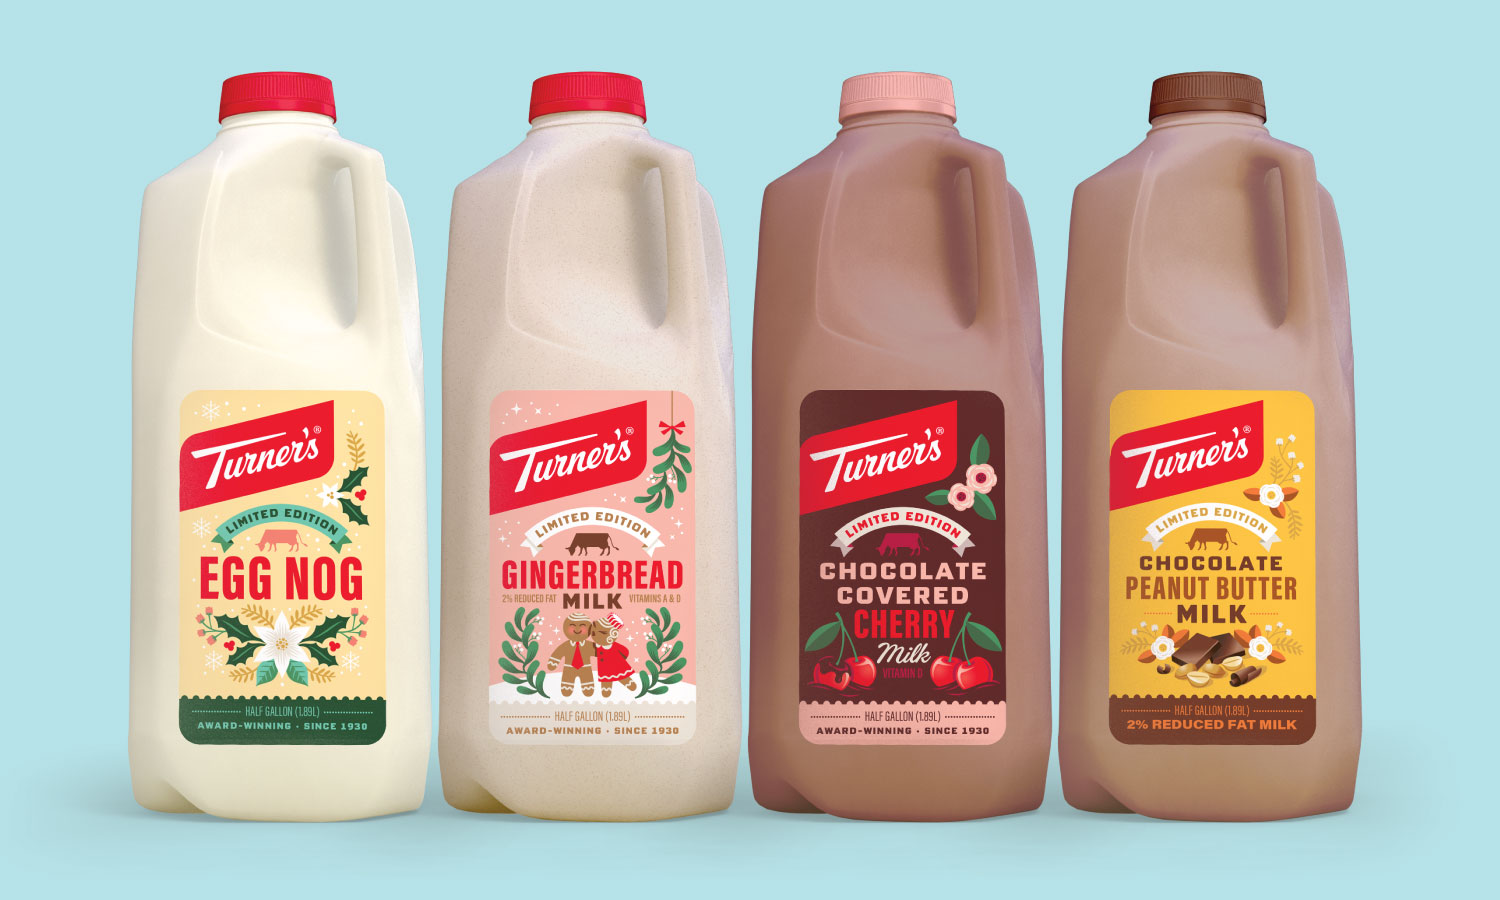 Turner's牛奶包装设计